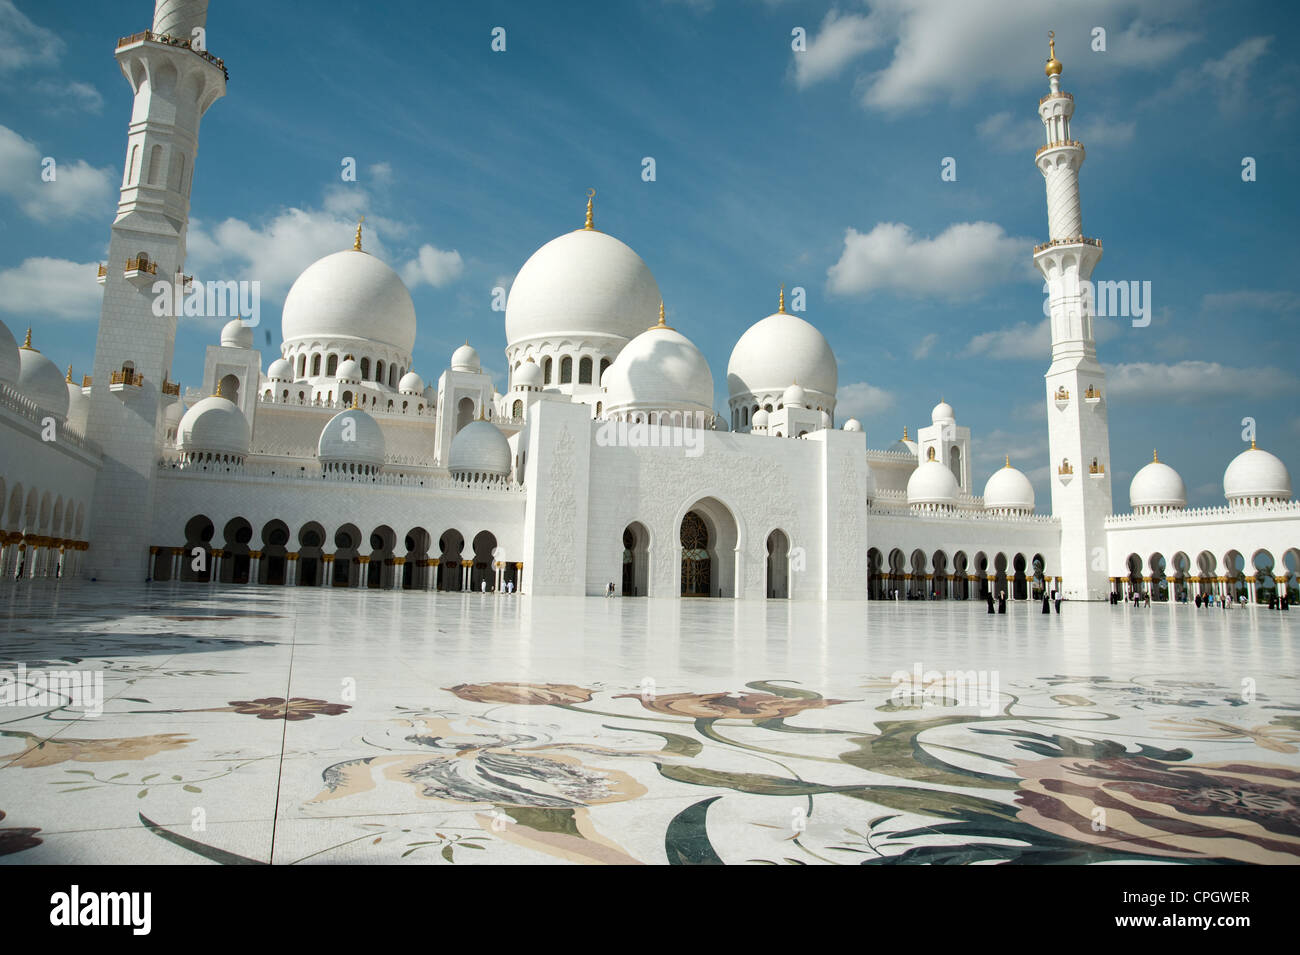 Храм для индусов в арабских эмиратах. Абу-Даби мечеть шейха Зайеда. Большая мечеть шейха Зайеда в Абу-Даби. Мечеть в Дубае шейха Зайда. Белая мечеть шейха Зайда в Абу-Даби.